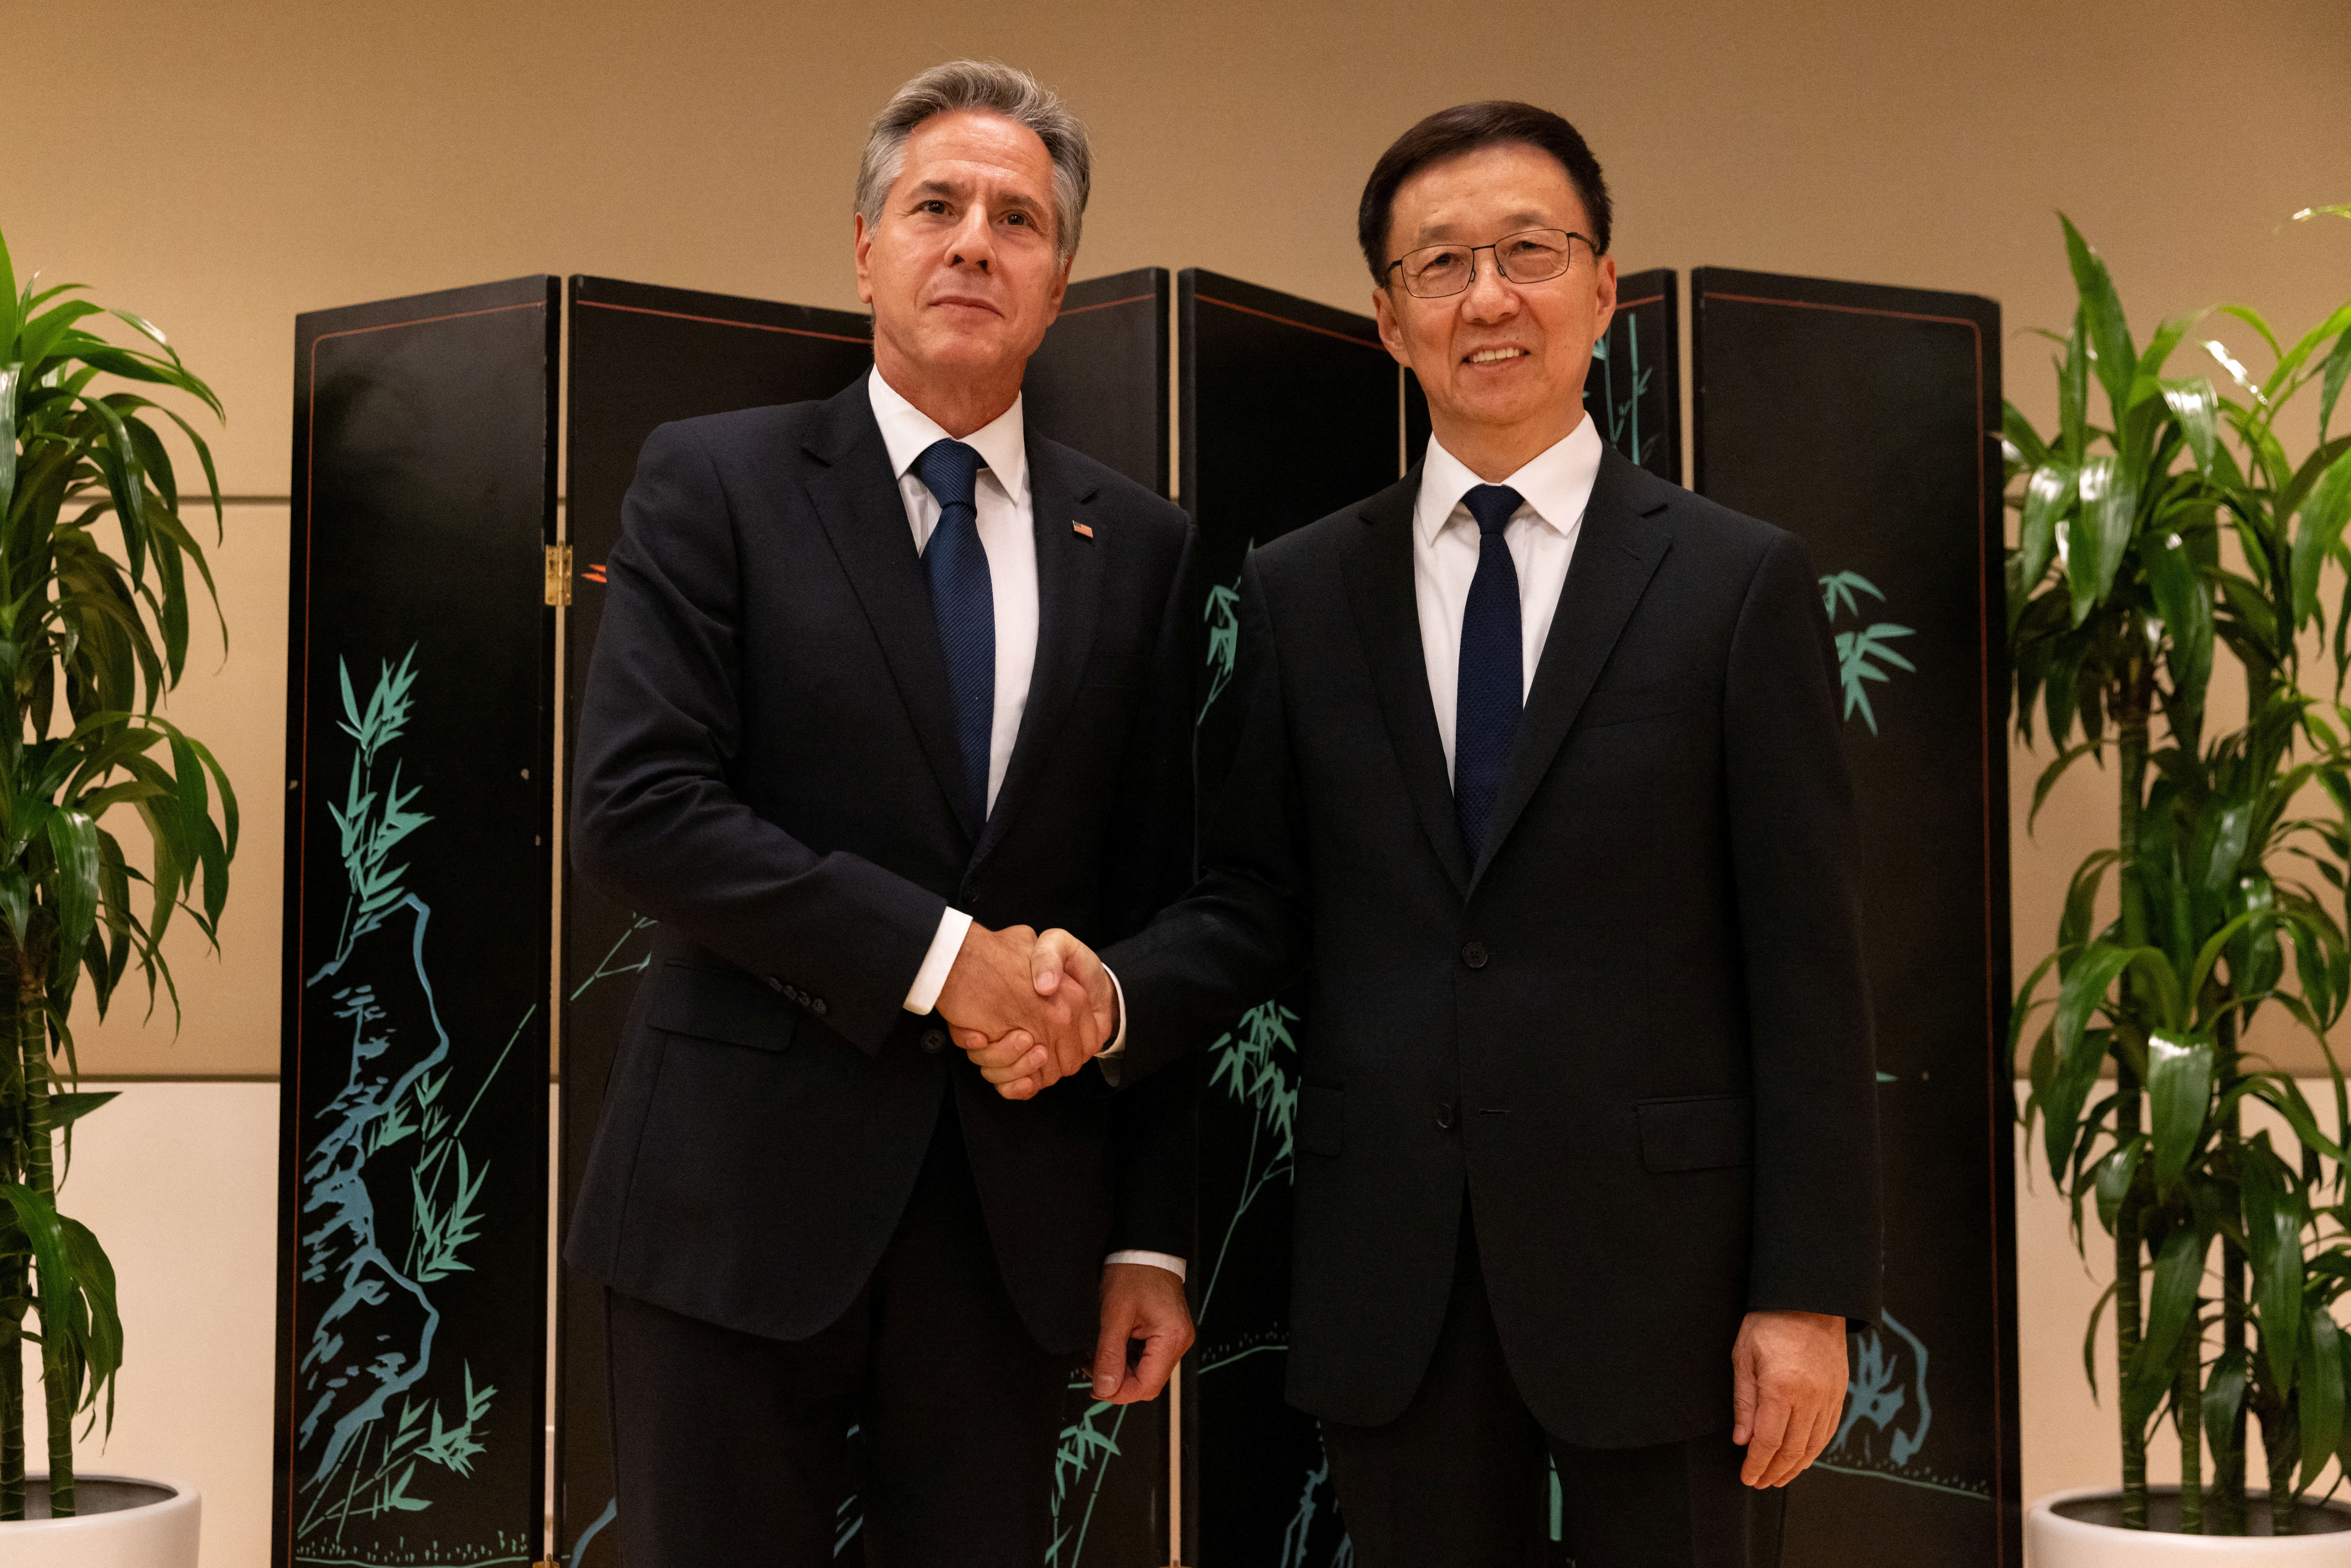 El máximo diplomático estadounidense Blinken se reúne con el vicepresidente chino Han en la ONU en medio de una situación tensa